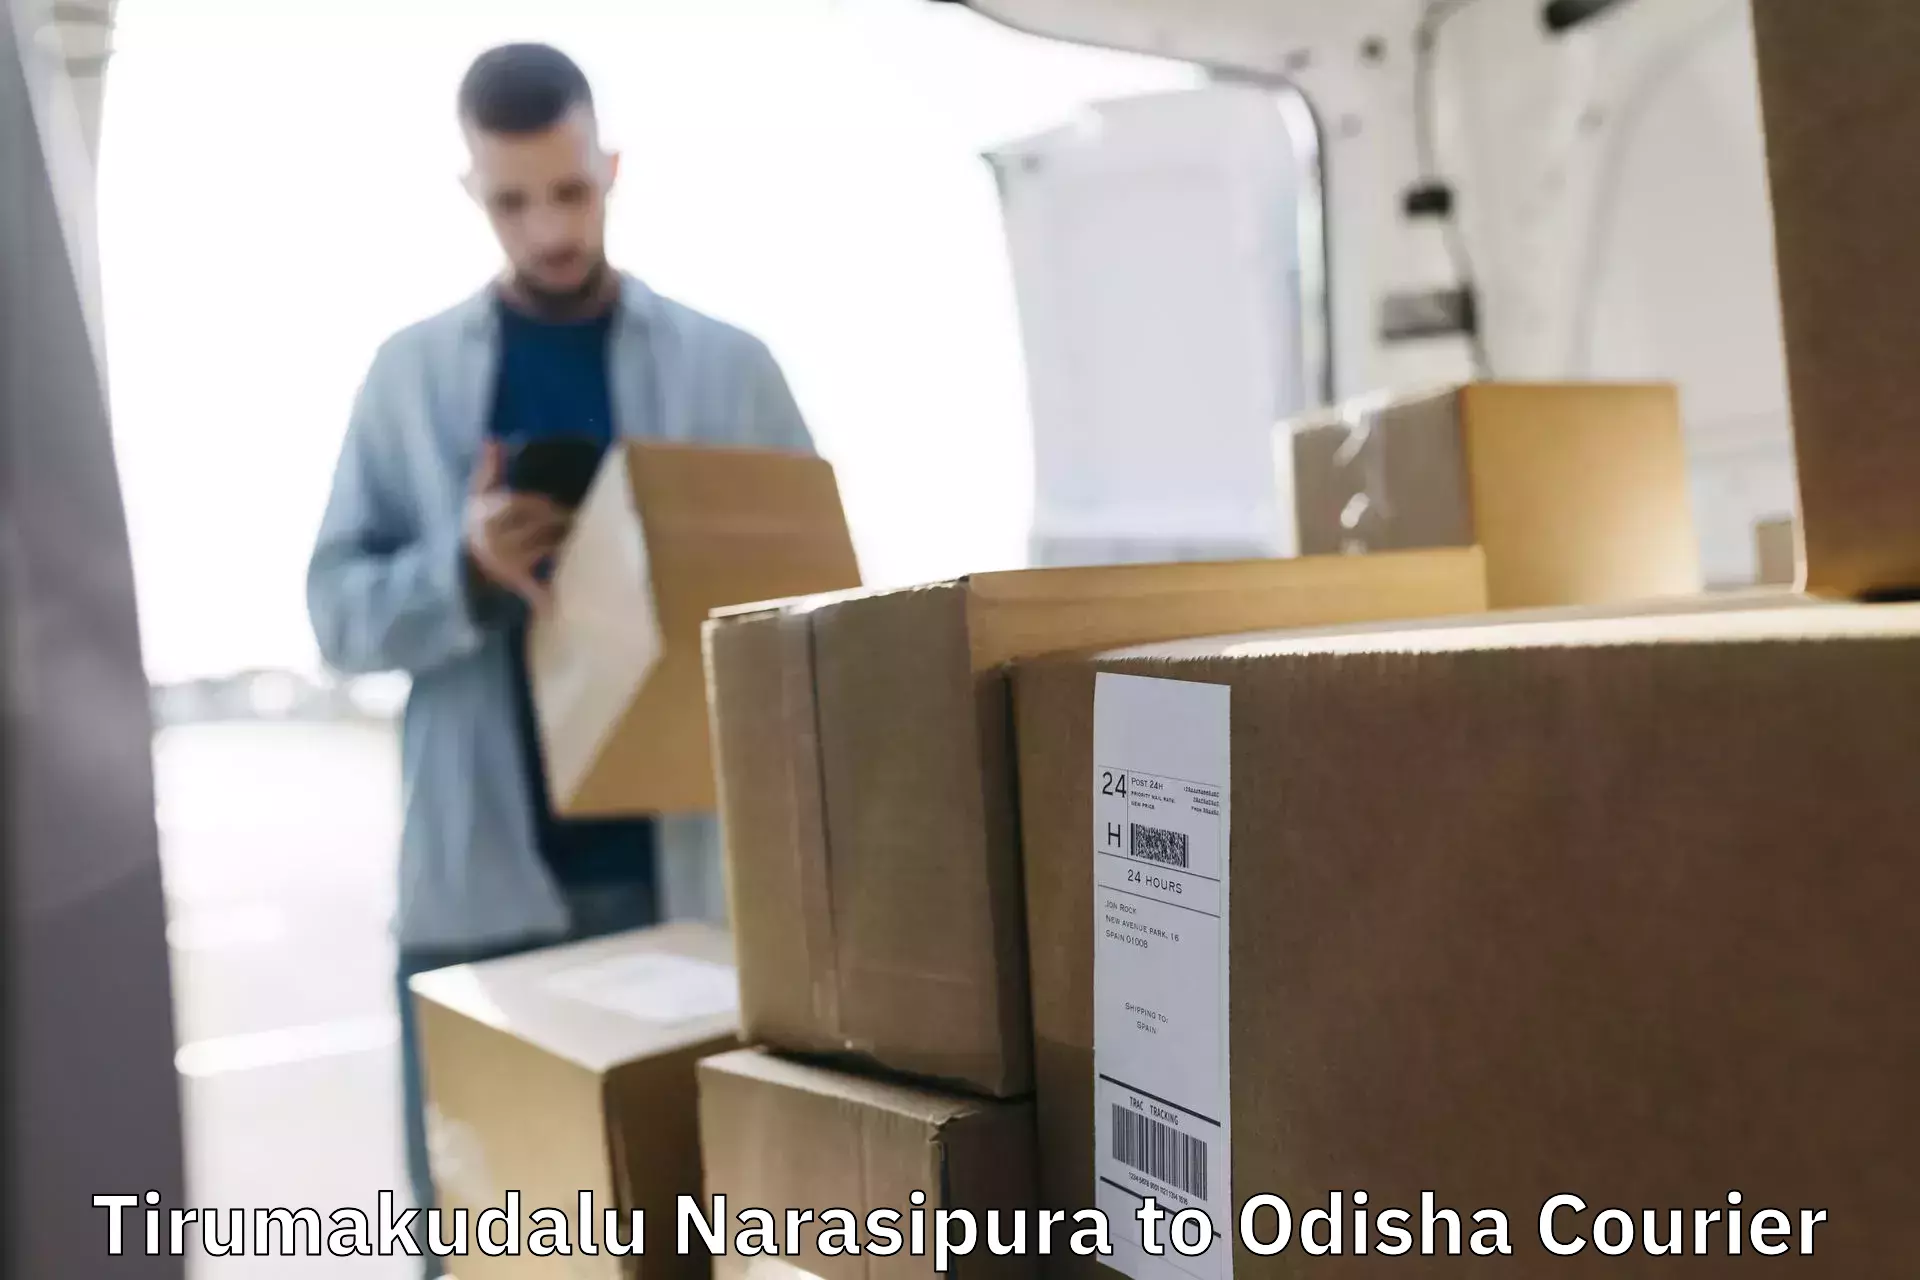 Express delivery network Tirumakudalu Narasipura to Bargarh